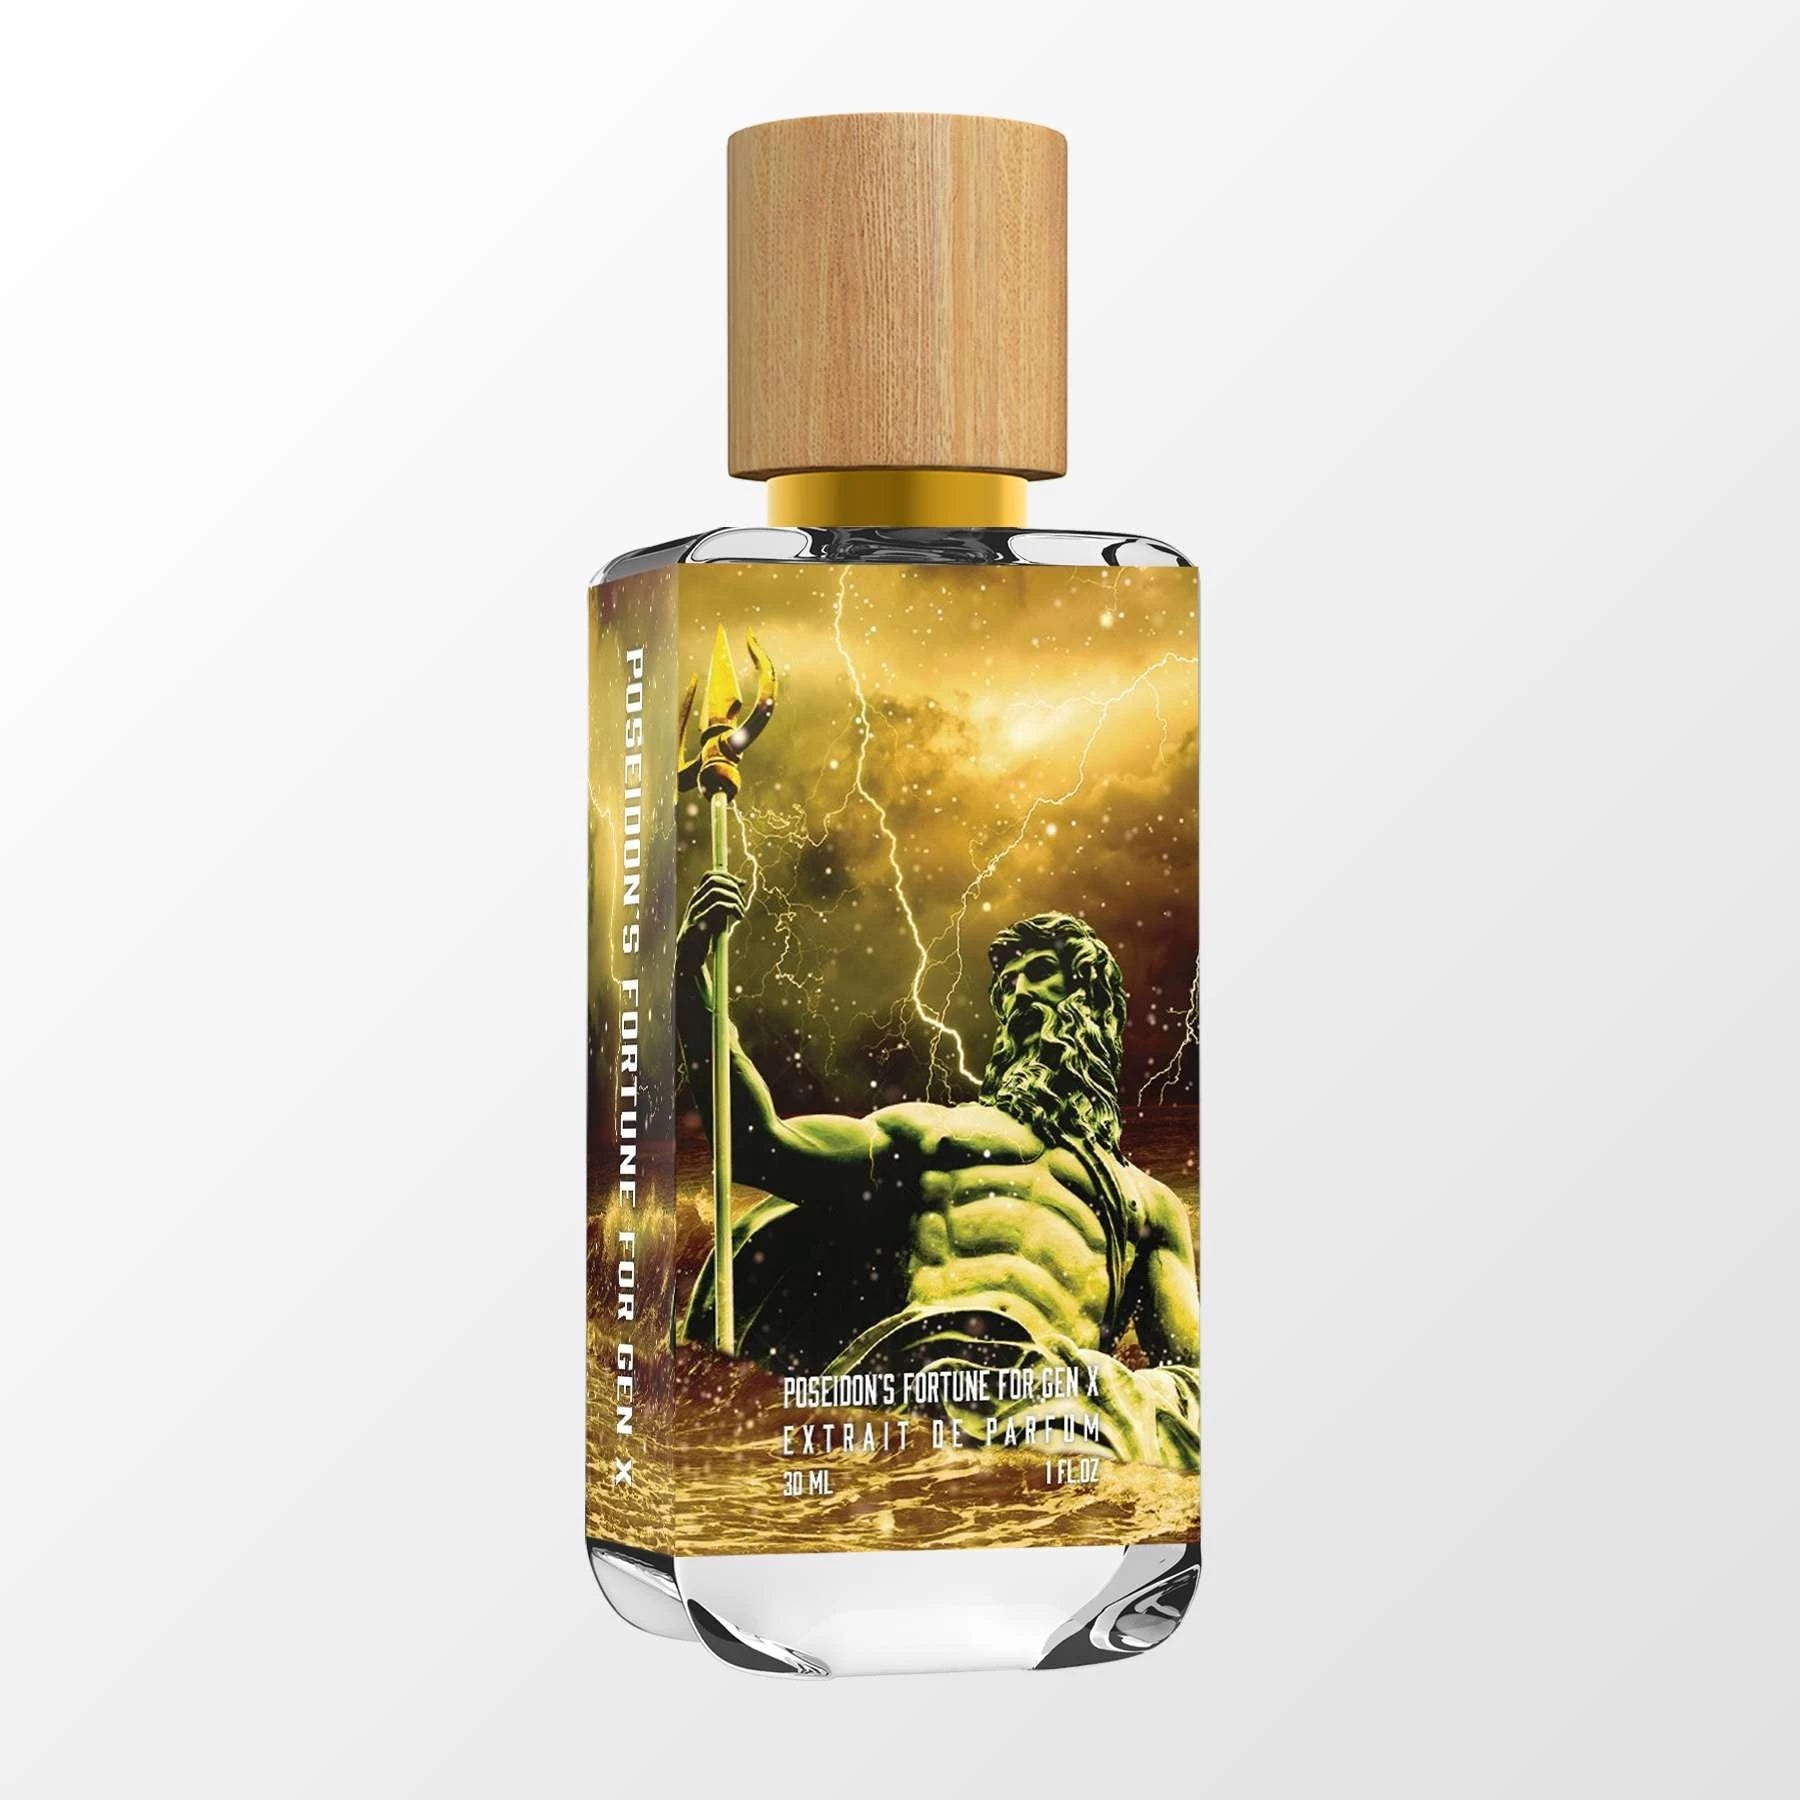 Poseidon's Aphrodisiac - DUA FRAGRANCES - Chypre Floral - Unisex Perfume -  34ml/1.1 FL OZ - Extrait De Parfum